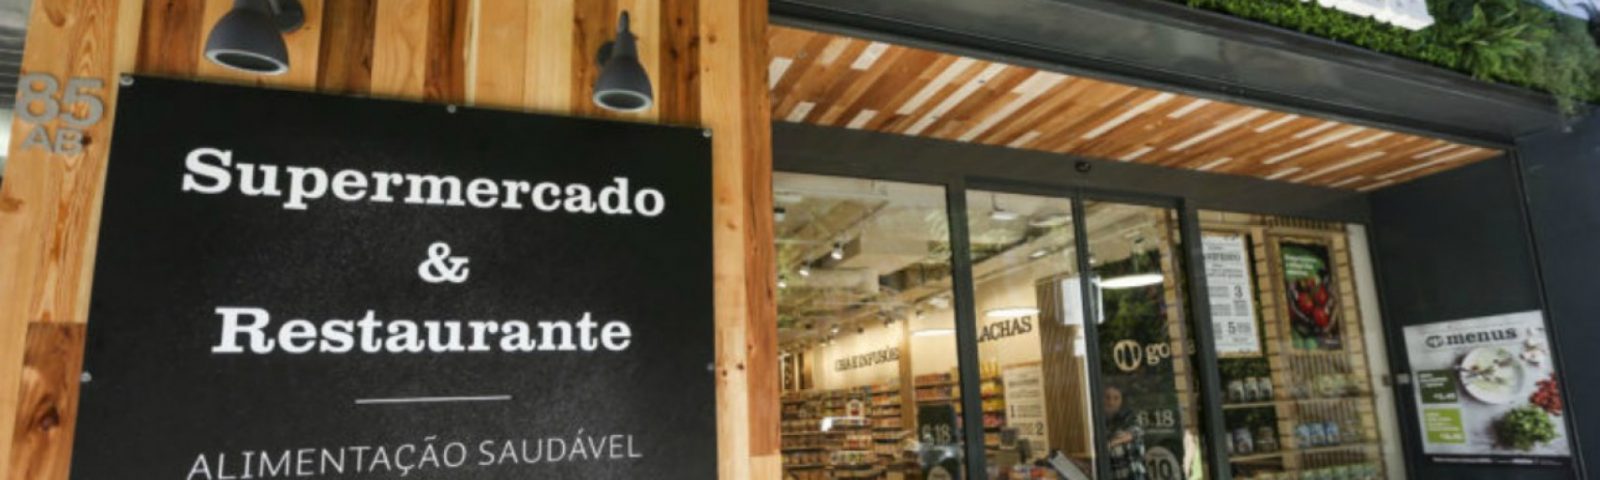 Sonae compra 51% da Go Natural e lança novo conceito de supermercado